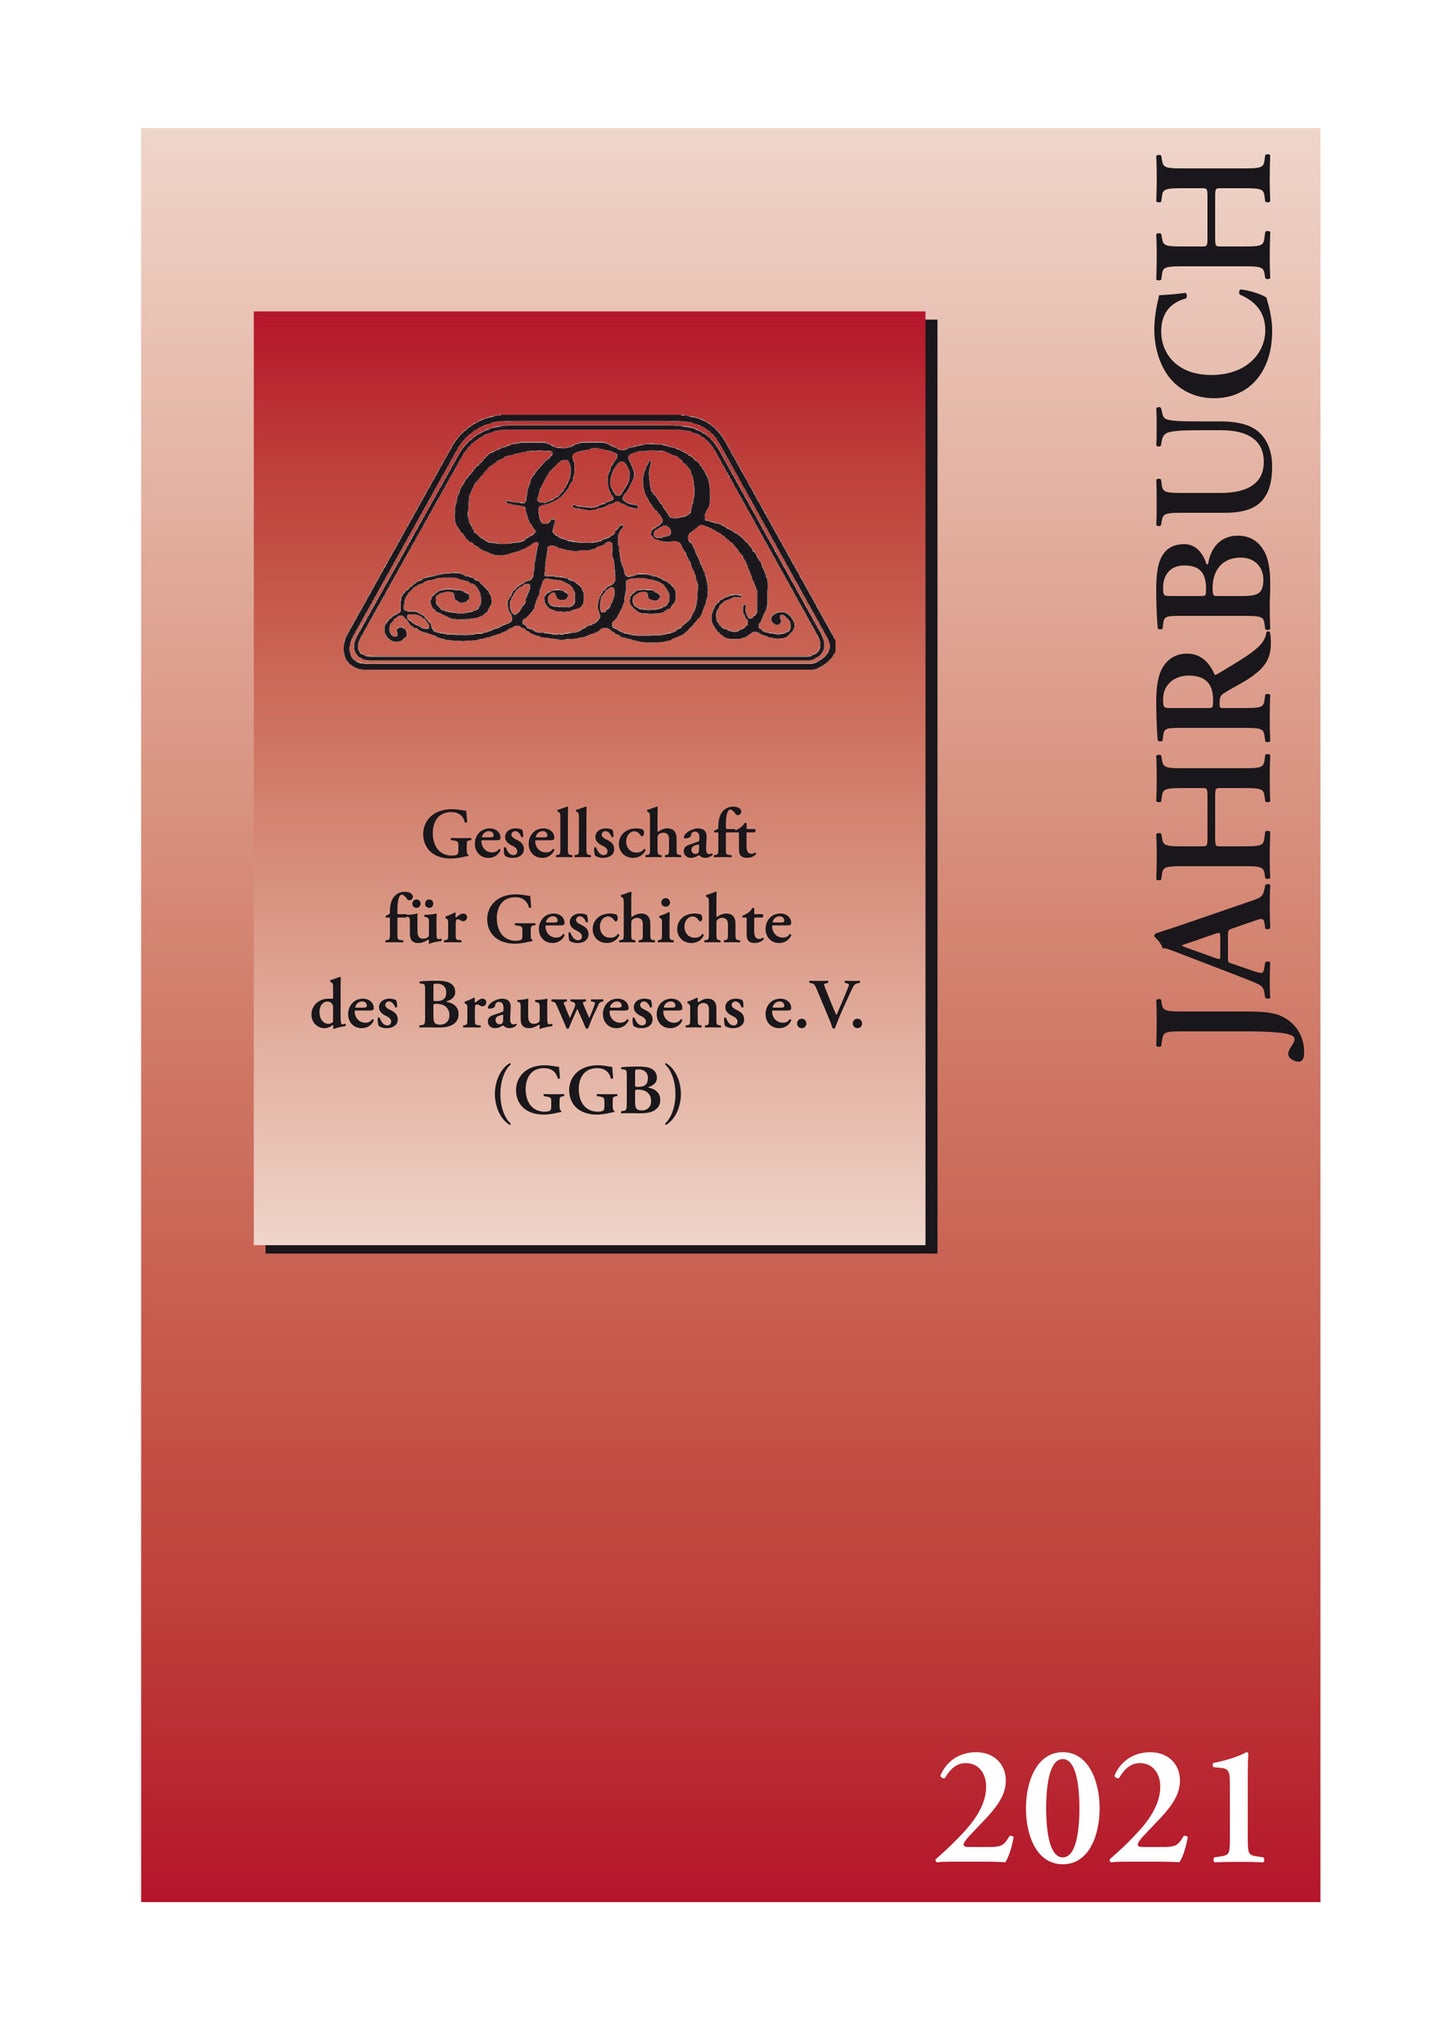 Jahrbuch 2021 der Gesellschaft für Geschichte des Brauwesens e.V. (GGB)